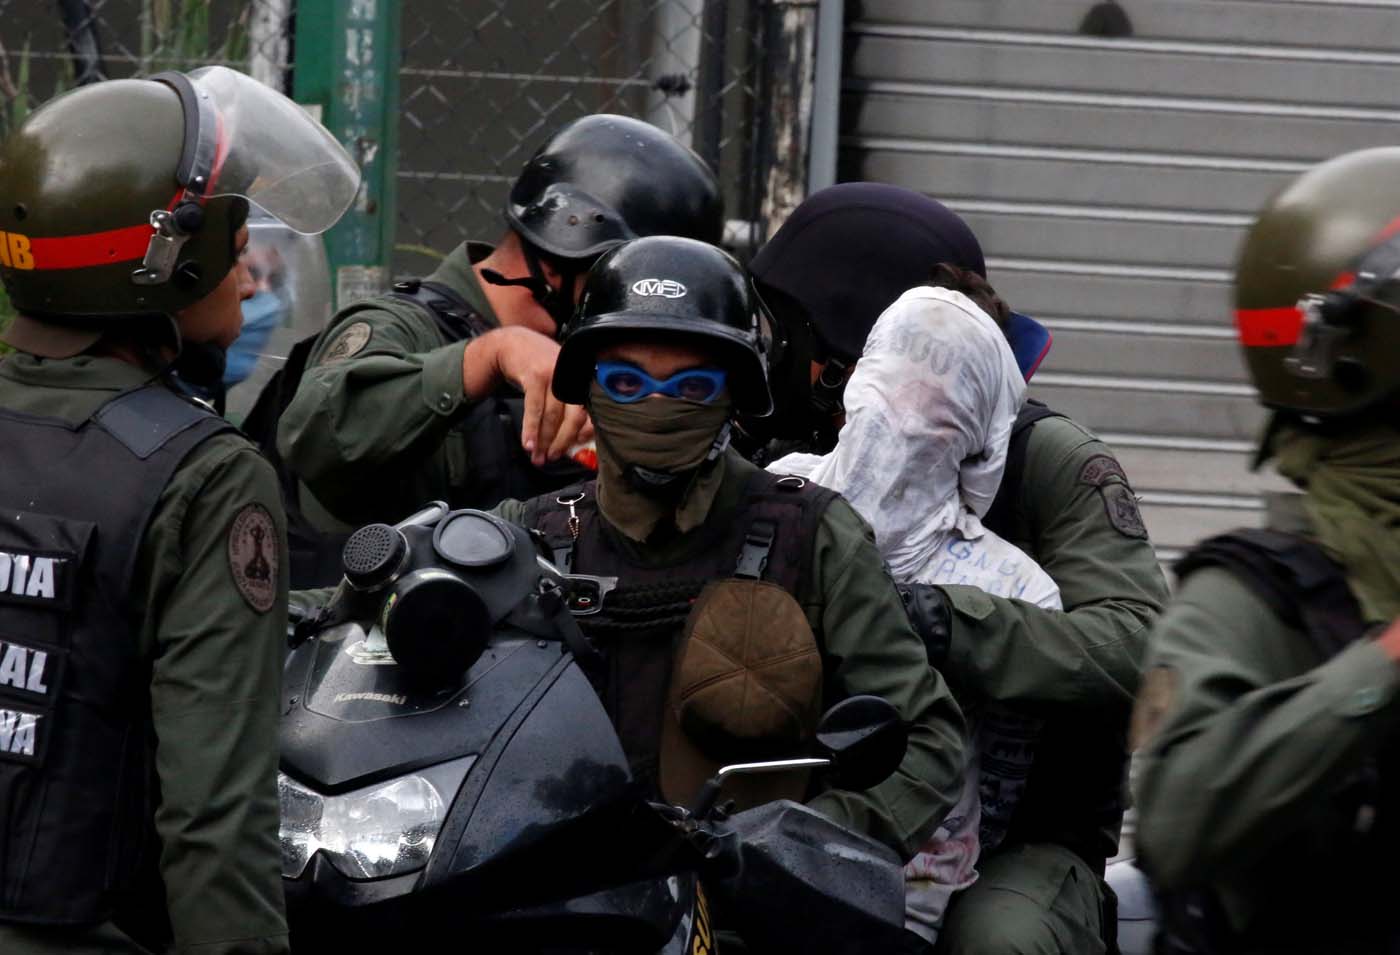 Detenciones arbitrarias en Venezuela: Pronunciamiento de Foro Penal y Human Rights Watch